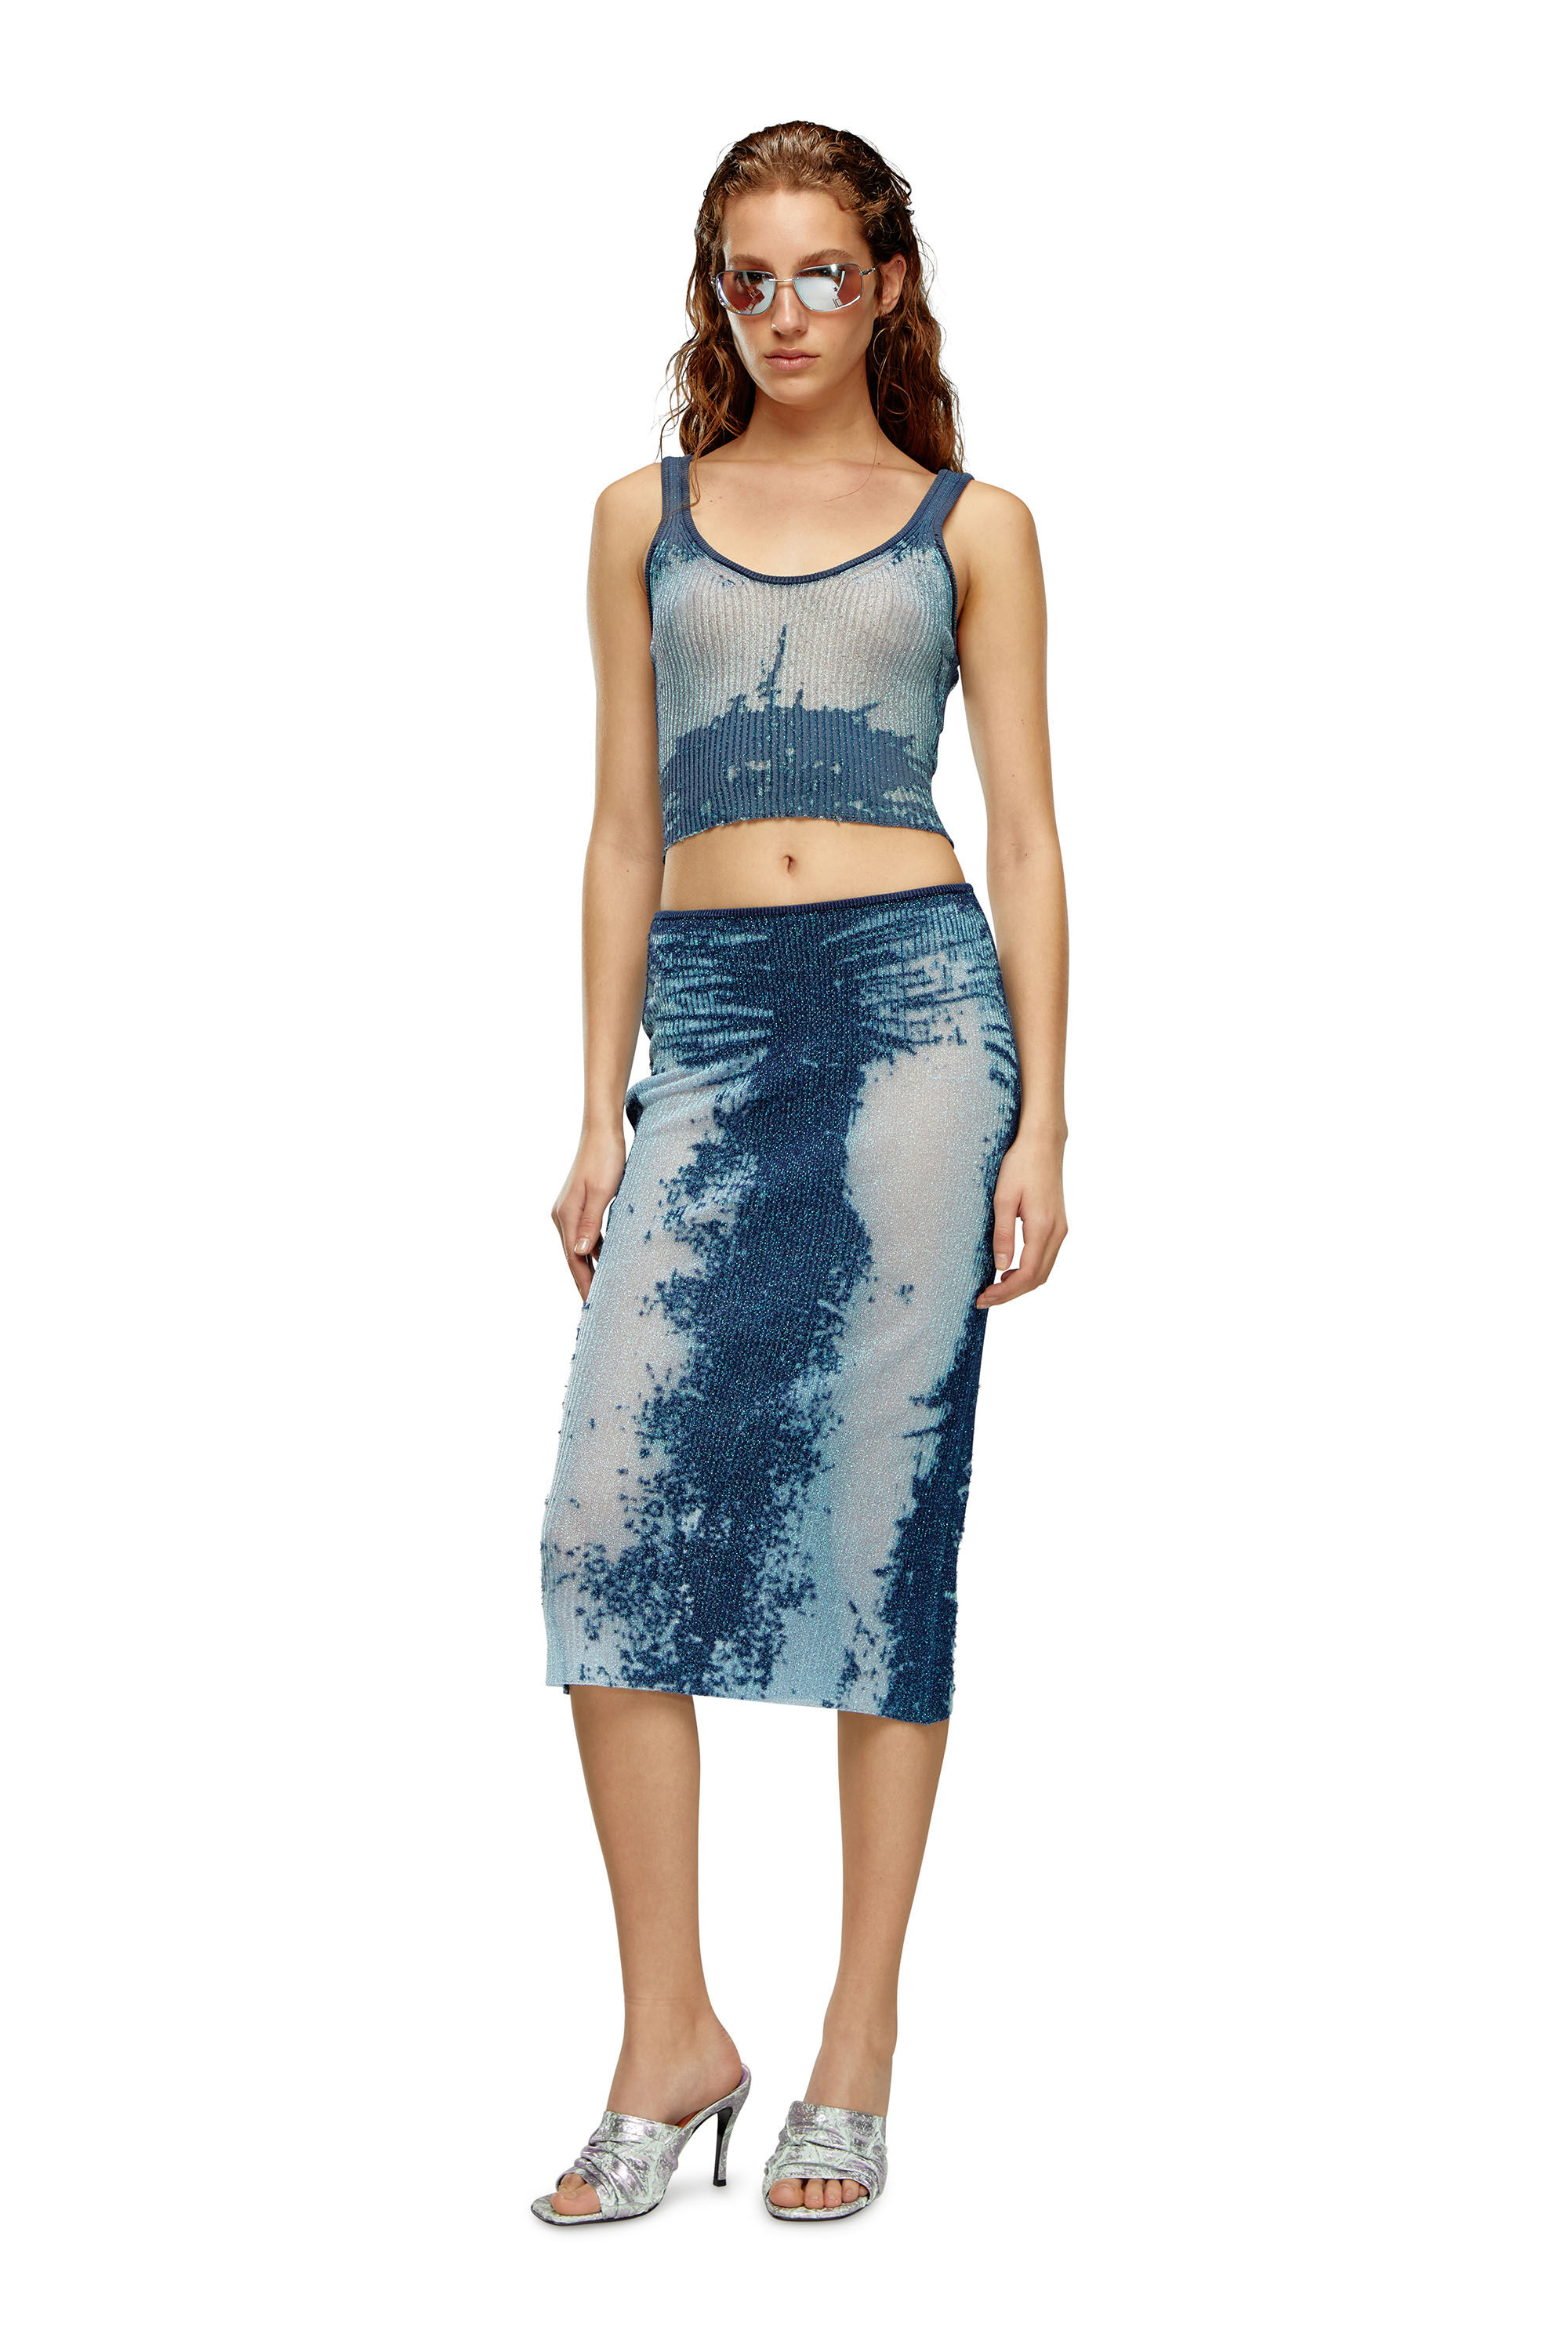 Diesel - M-BEGONIA, Woman Midi skirt in devoré metallic knit in Blue - Image 1